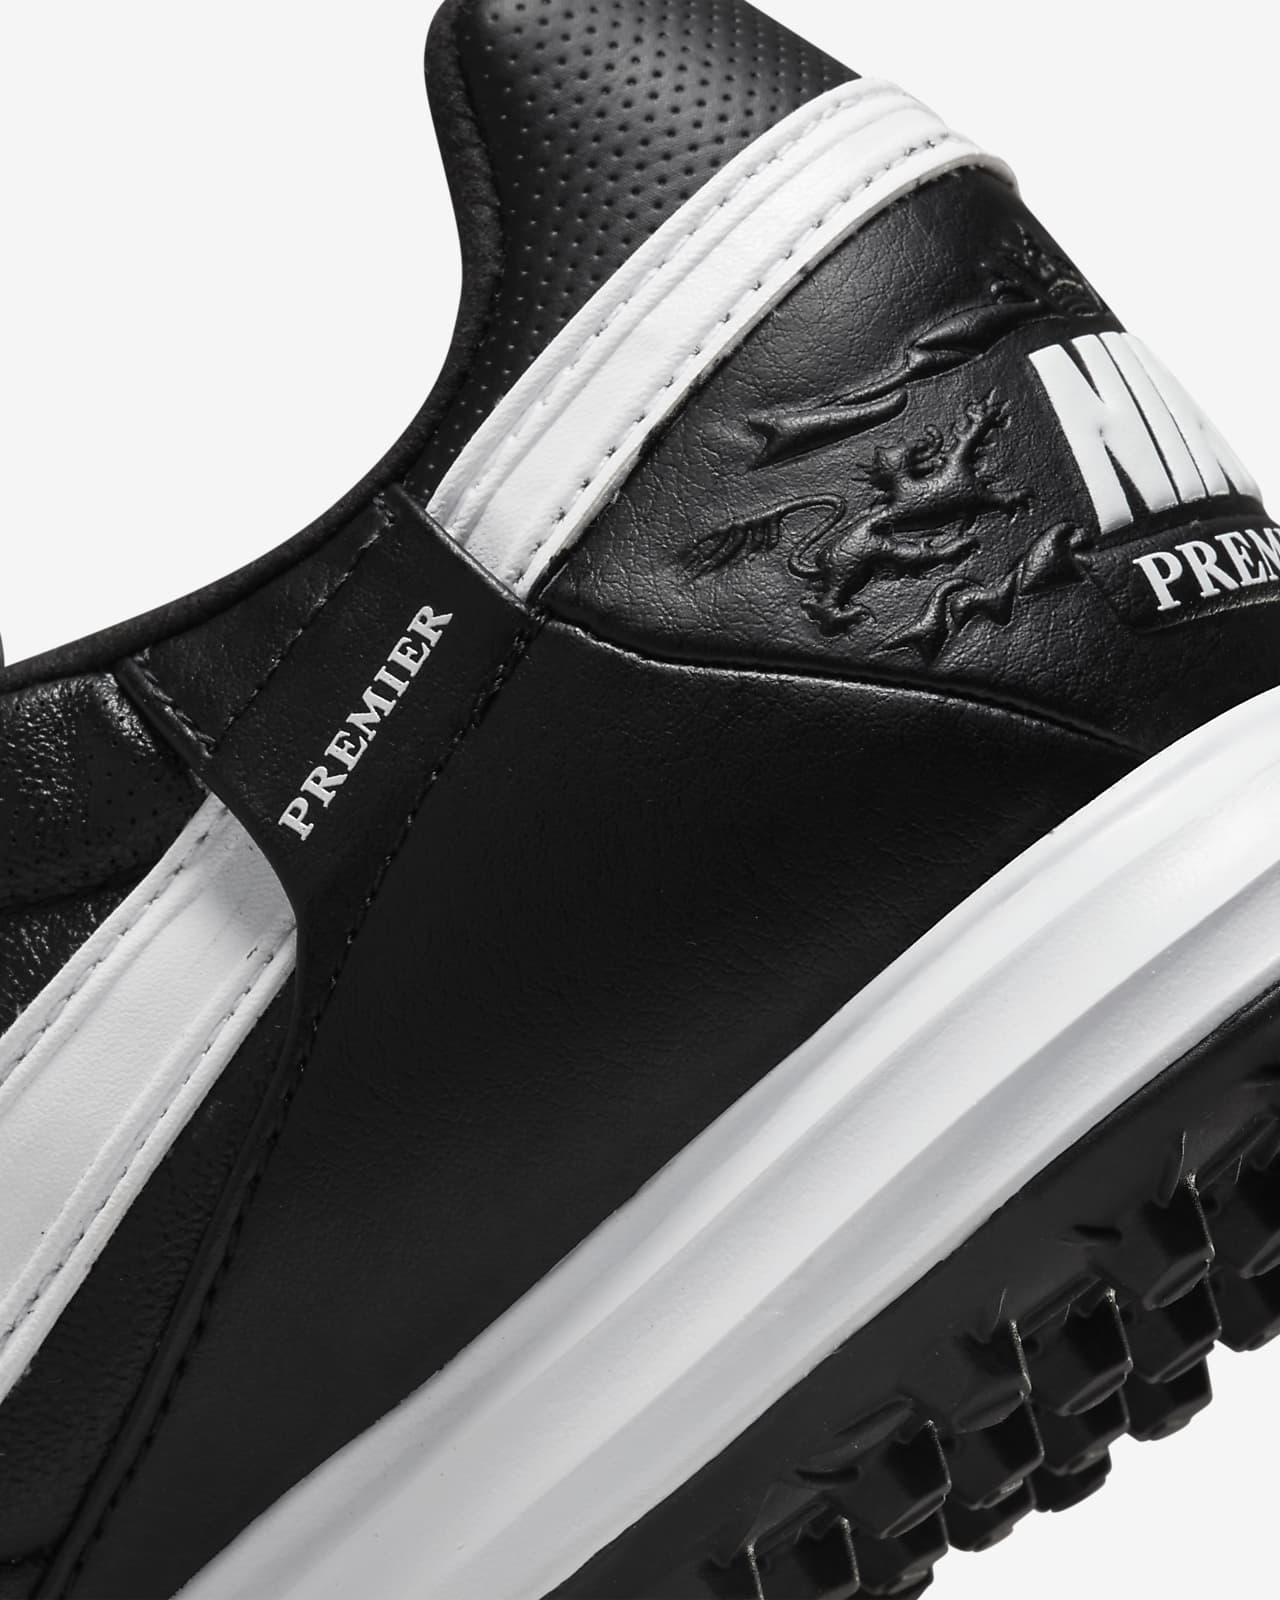 Y presión revelación Nike Premier 3 Artificial-Turf Soccer Shoes. Nike.com